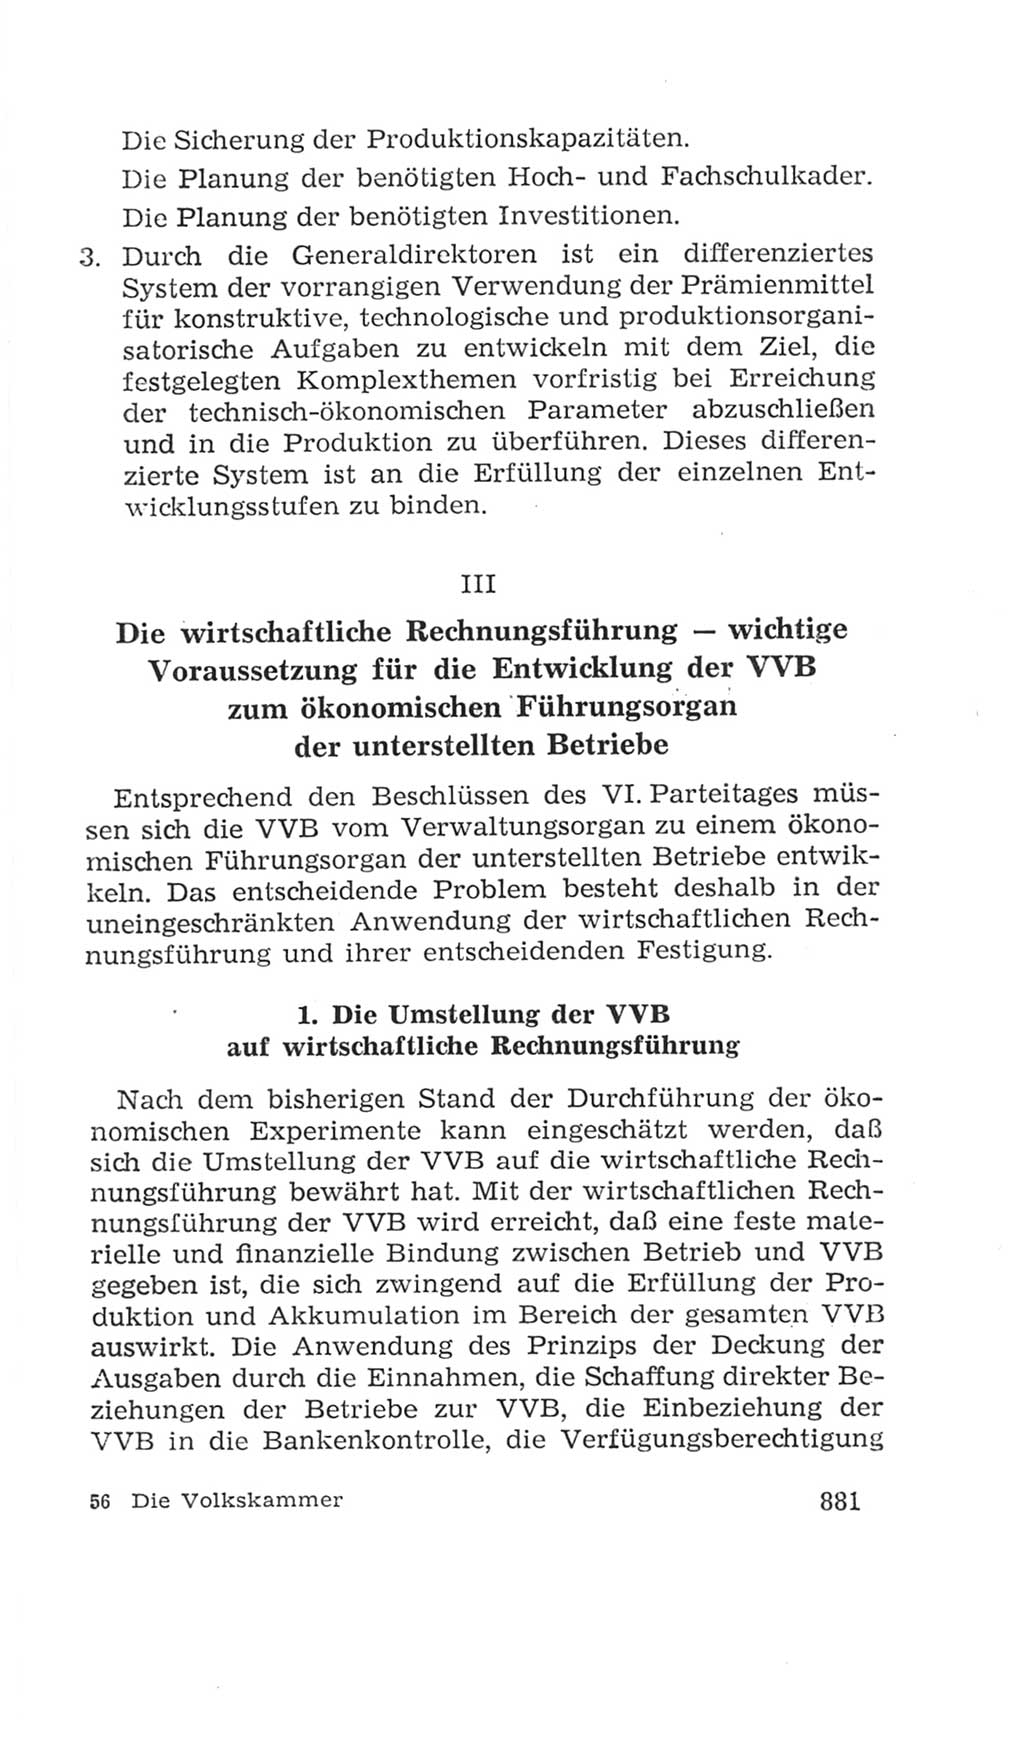 Volkskammer (VK) der Deutschen Demokratischen Republik (DDR), 4. Wahlperiode 1963-1967, Seite 881 (VK. DDR 4. WP. 1963-1967, S. 881)